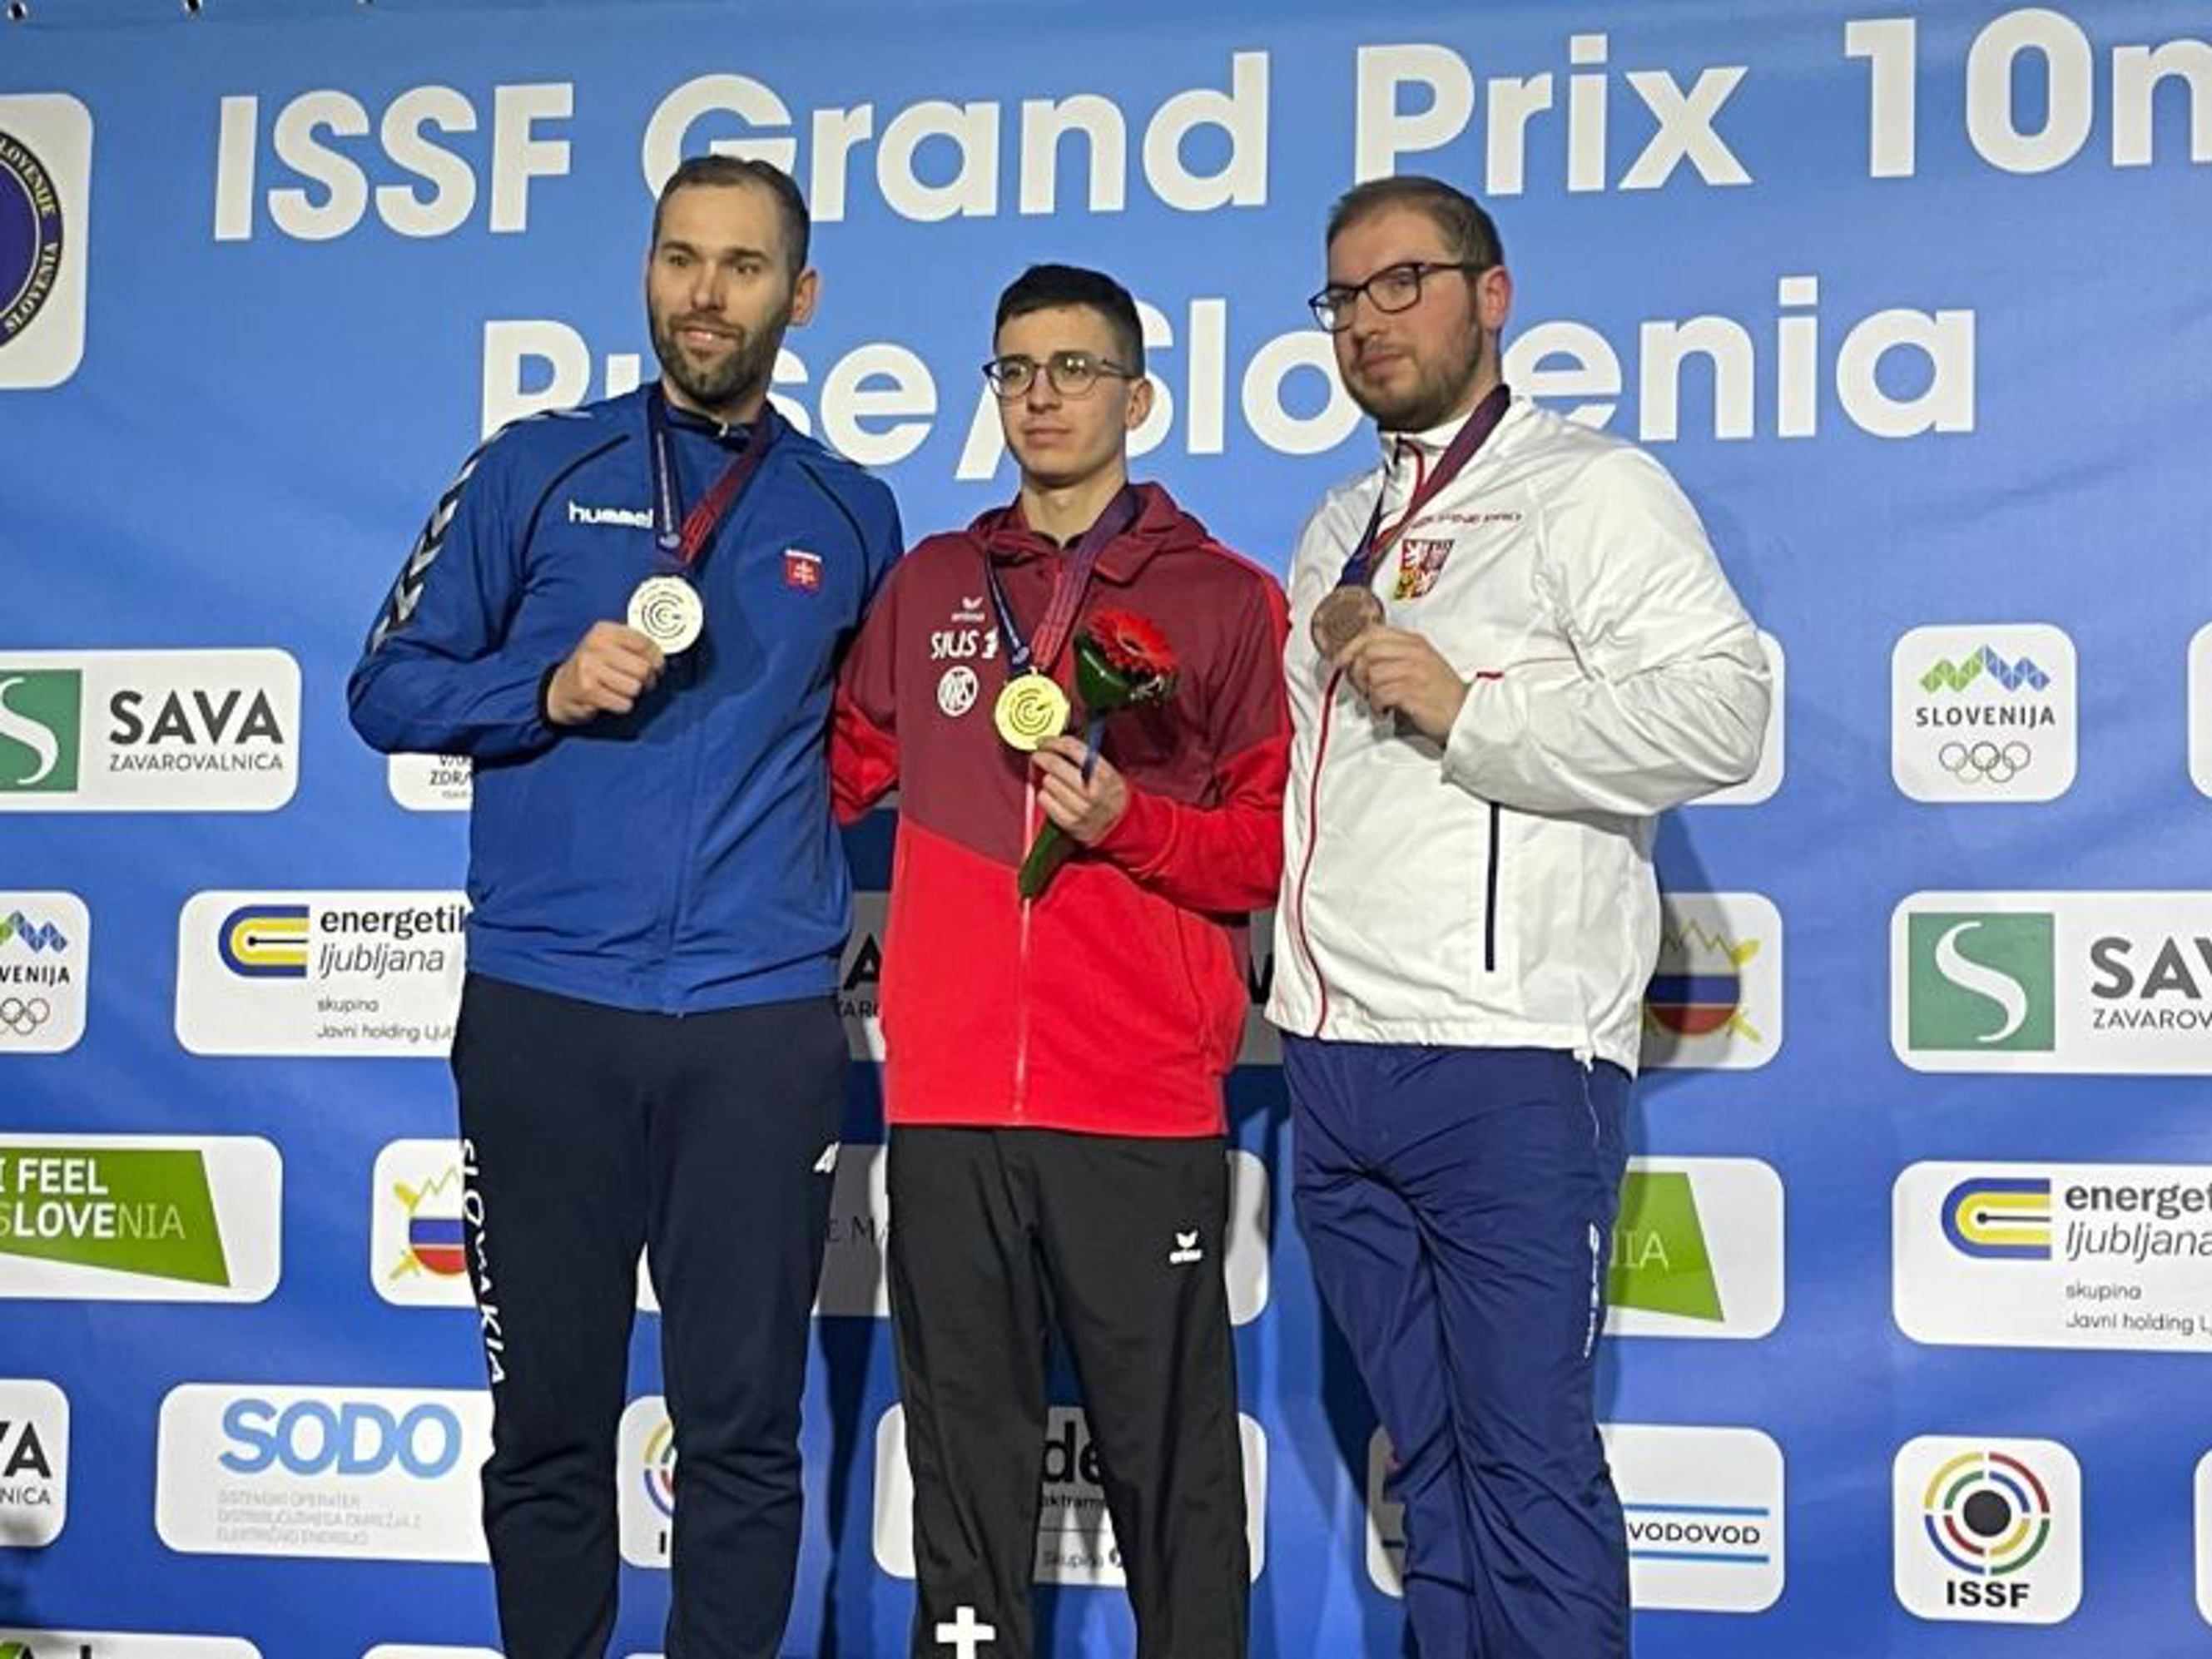 Jason Solari mit der Goldmedaille.